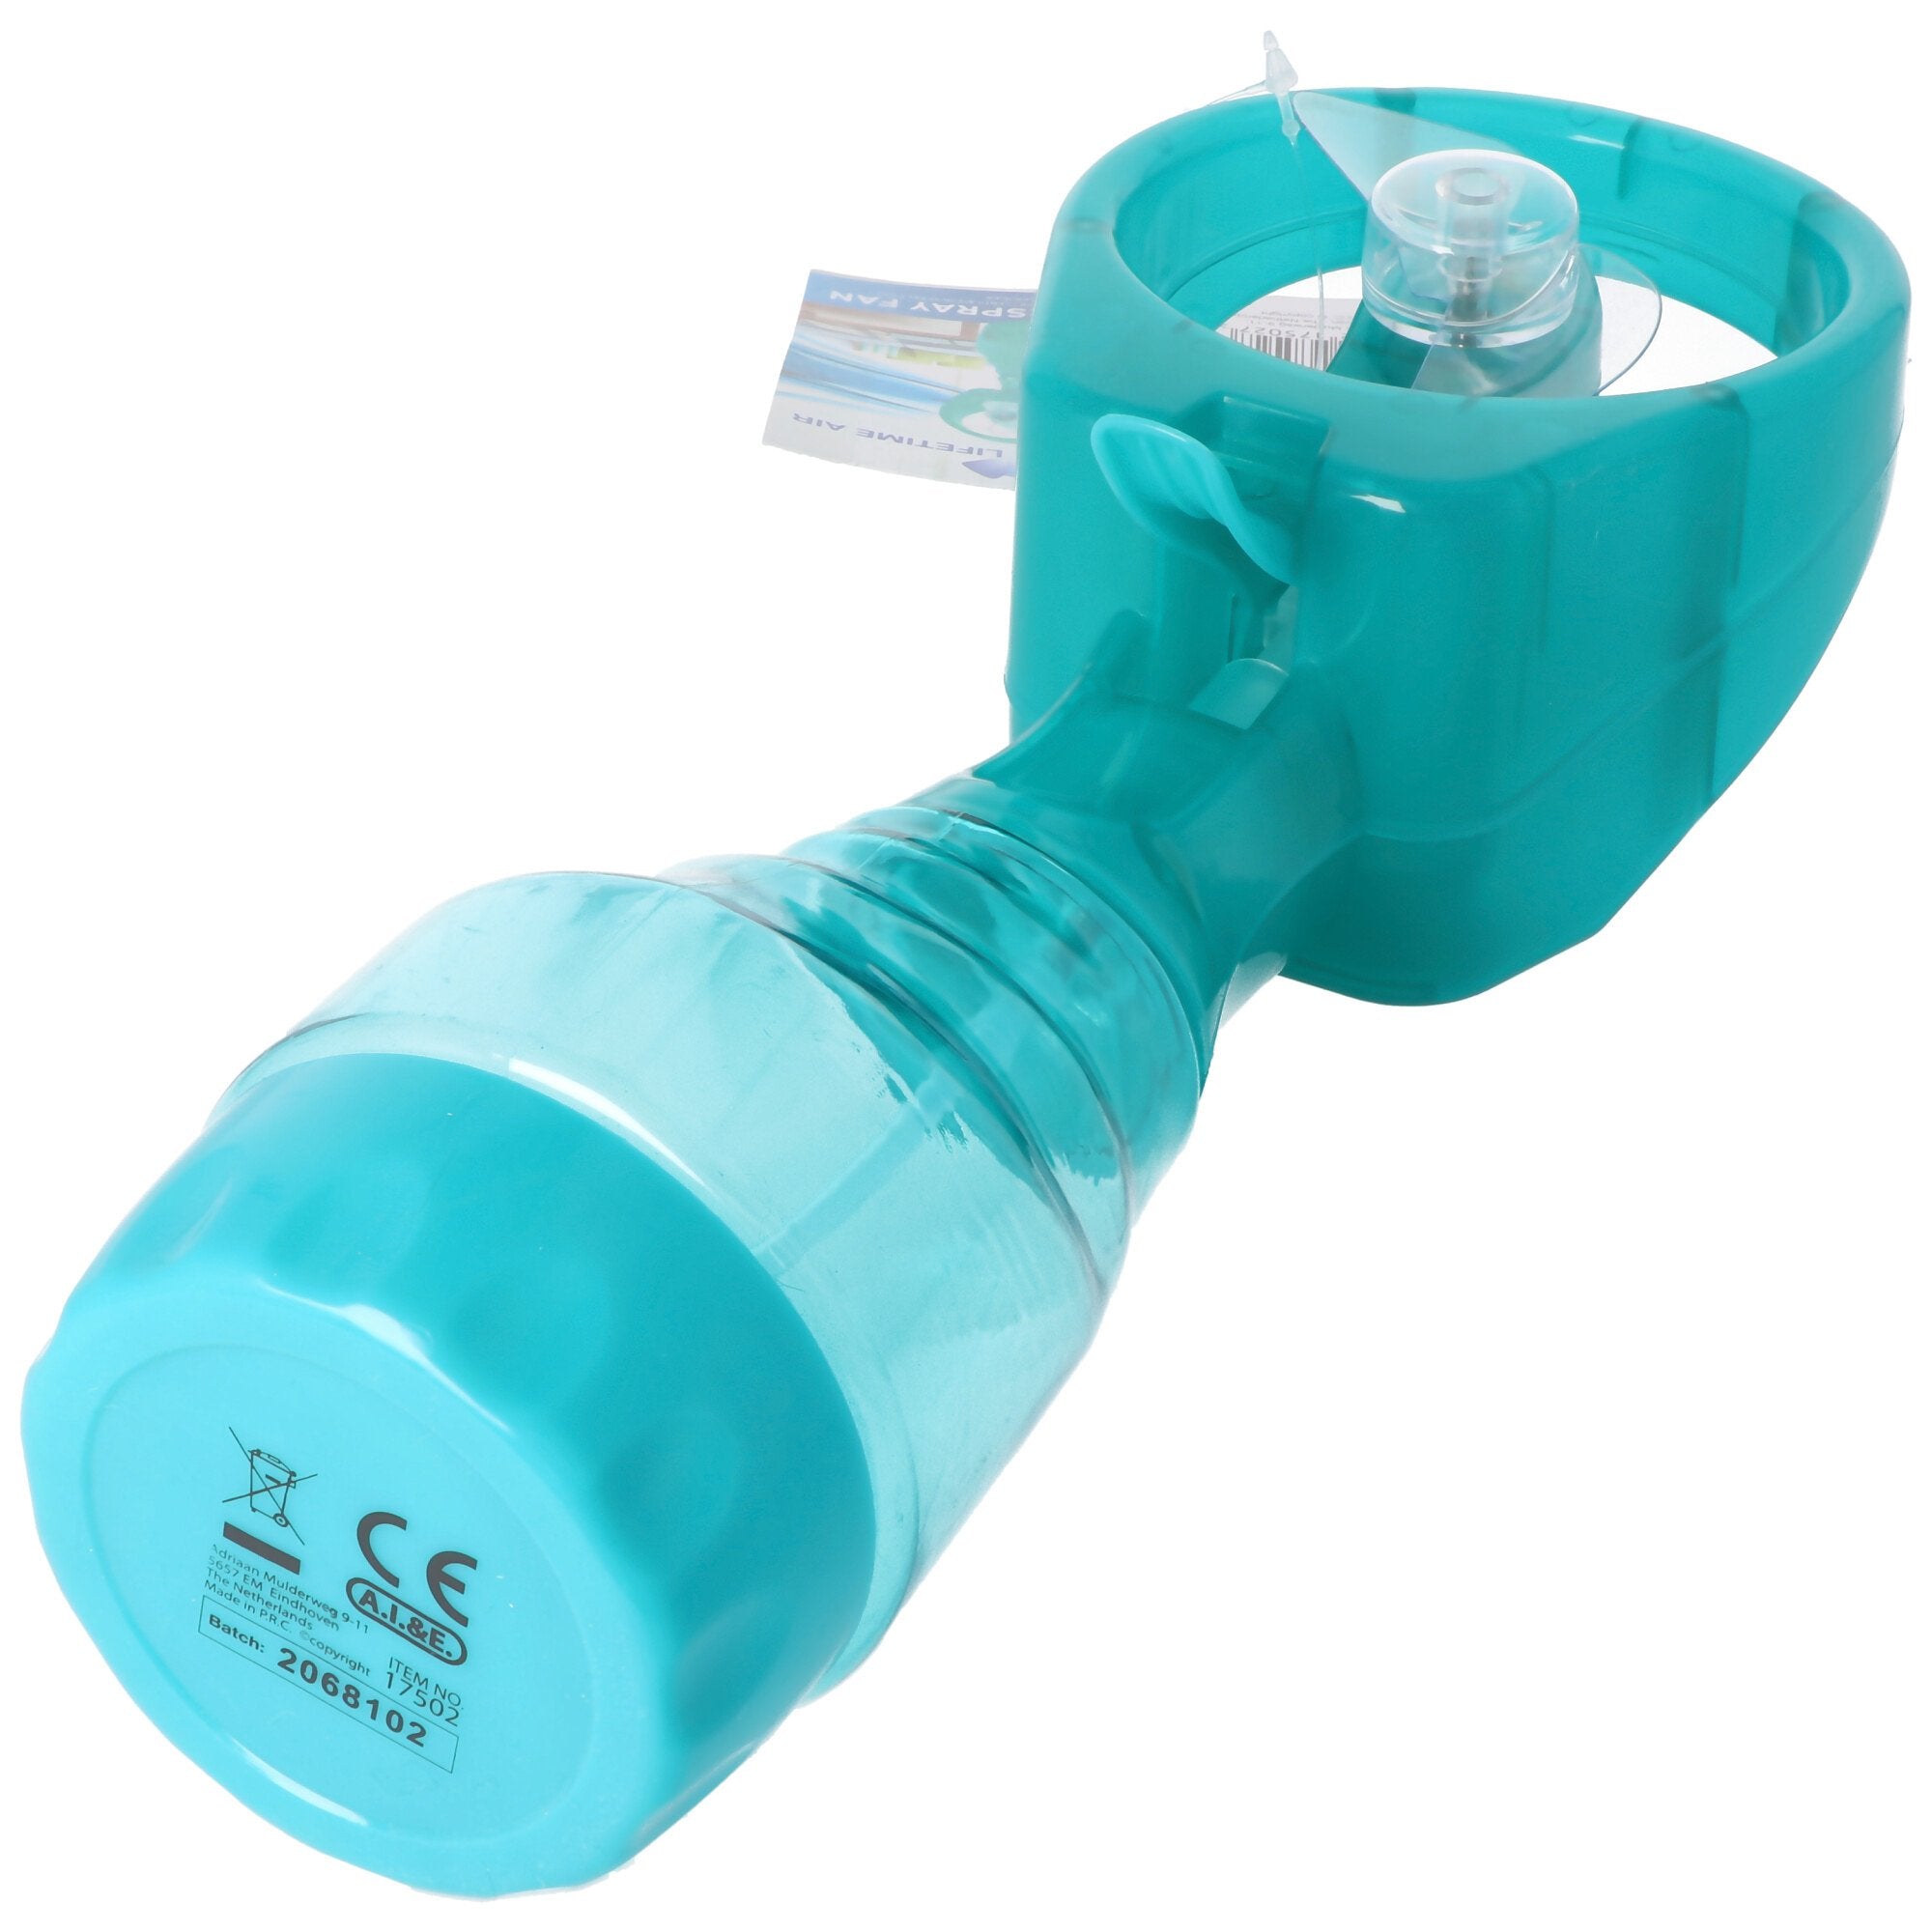 Handventilator met waterverstuiver, watersproeistraalventilator, ventilator met spuitfles, geassorte